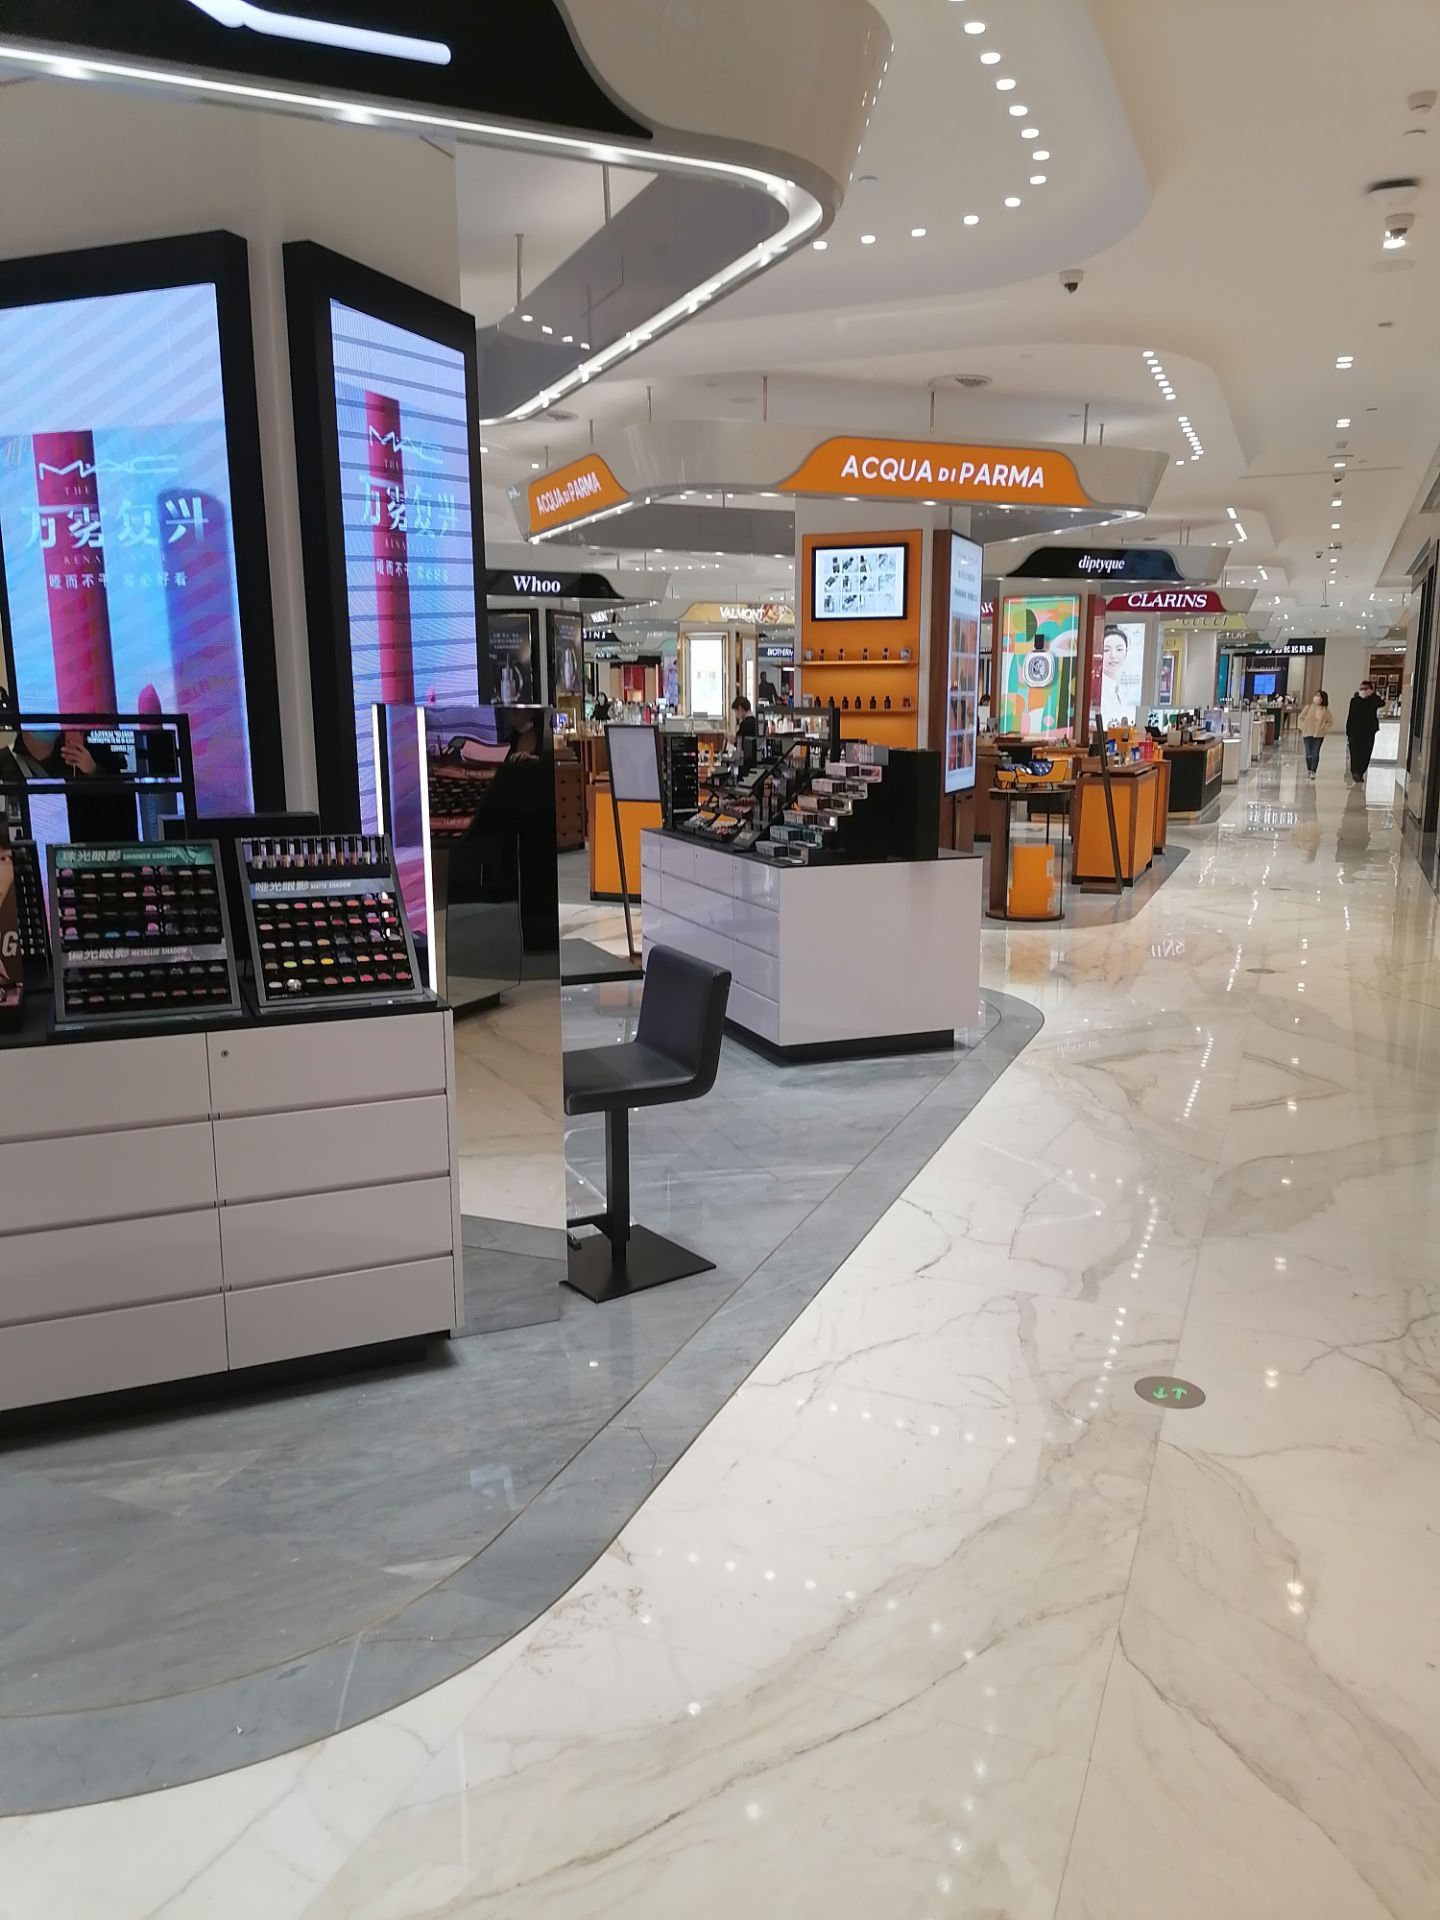 【携程攻略】西安skp购物,购物中心规模很大,内部环境整洁舒适,装饰